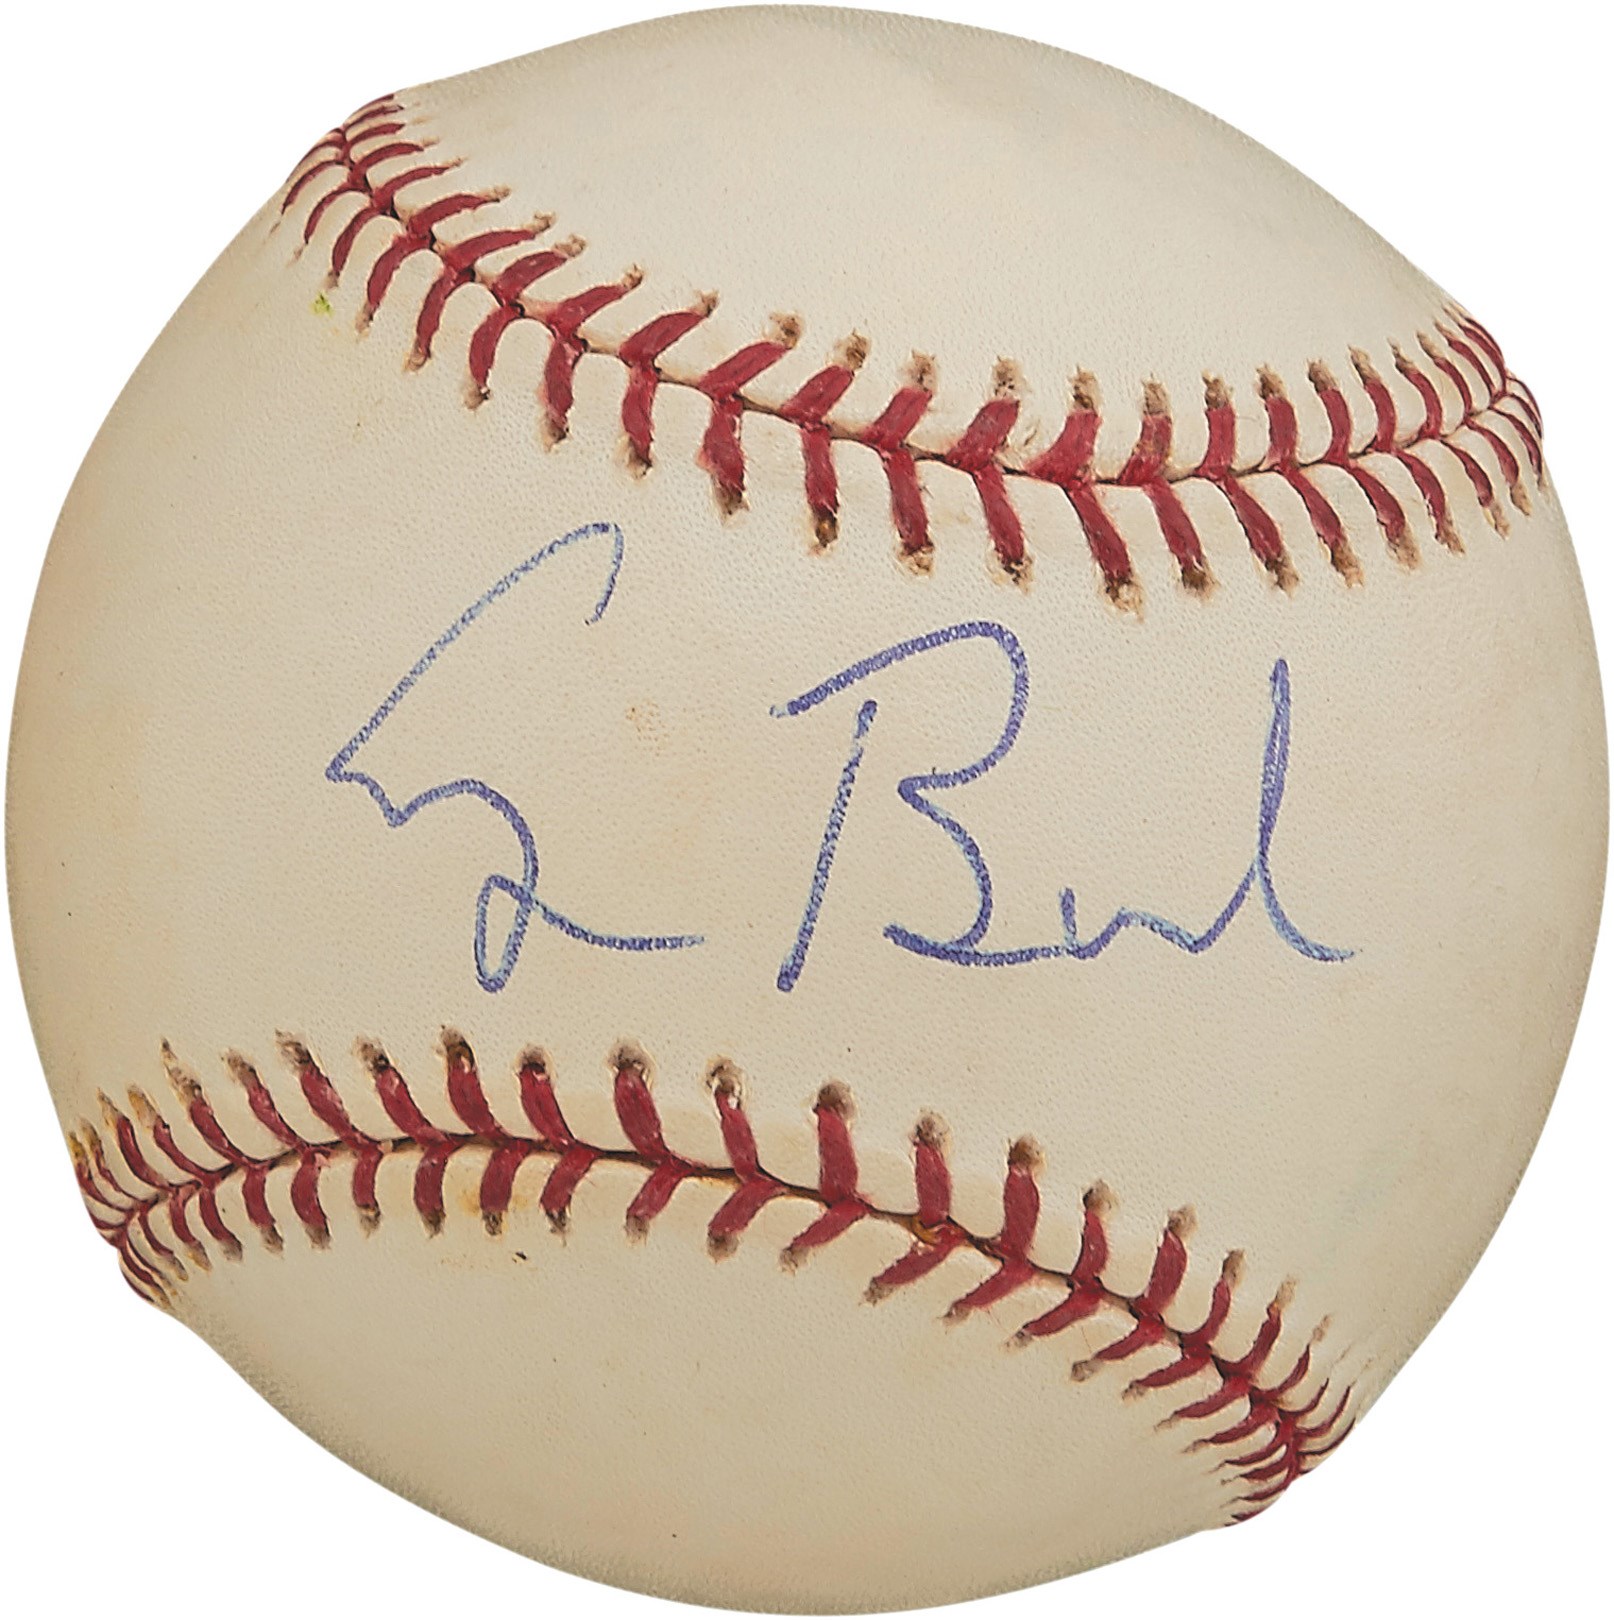 George H.W. Bush Signed Baseball to Bobby Doerr (Photo Proof)